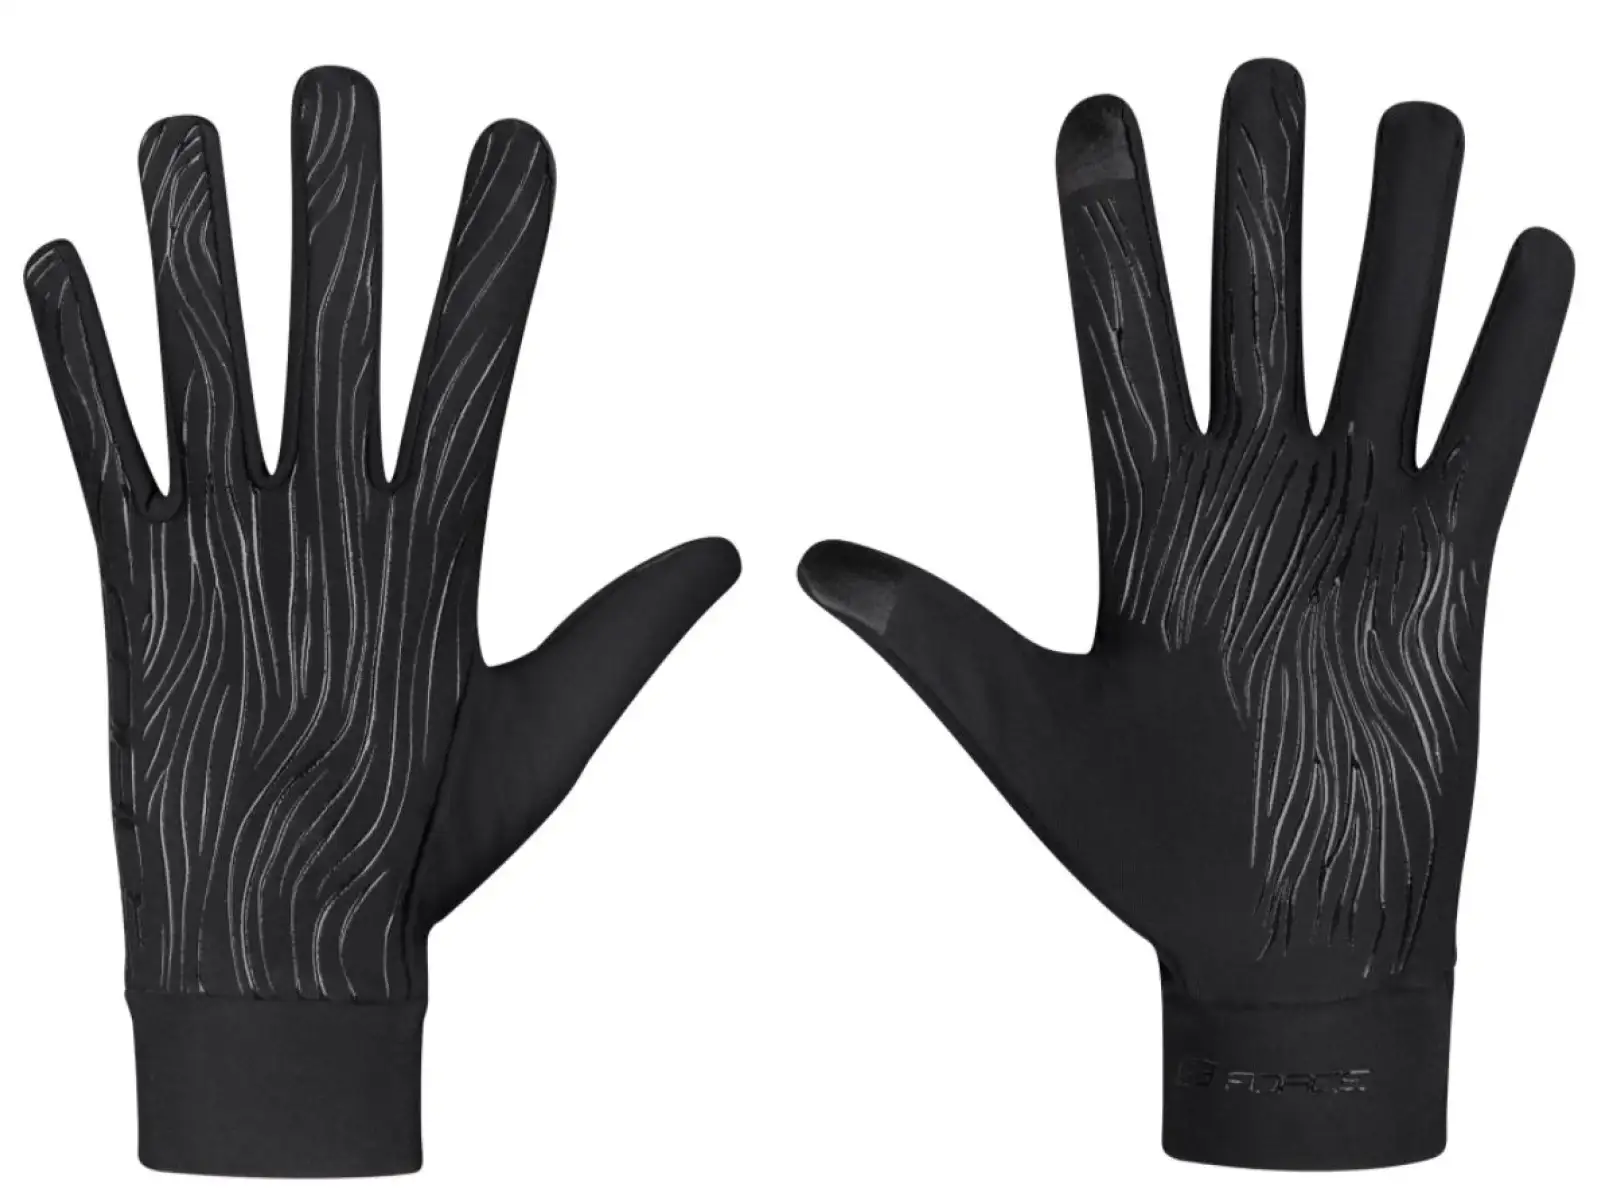 Force Tiger rukavice jaro/podzim černá